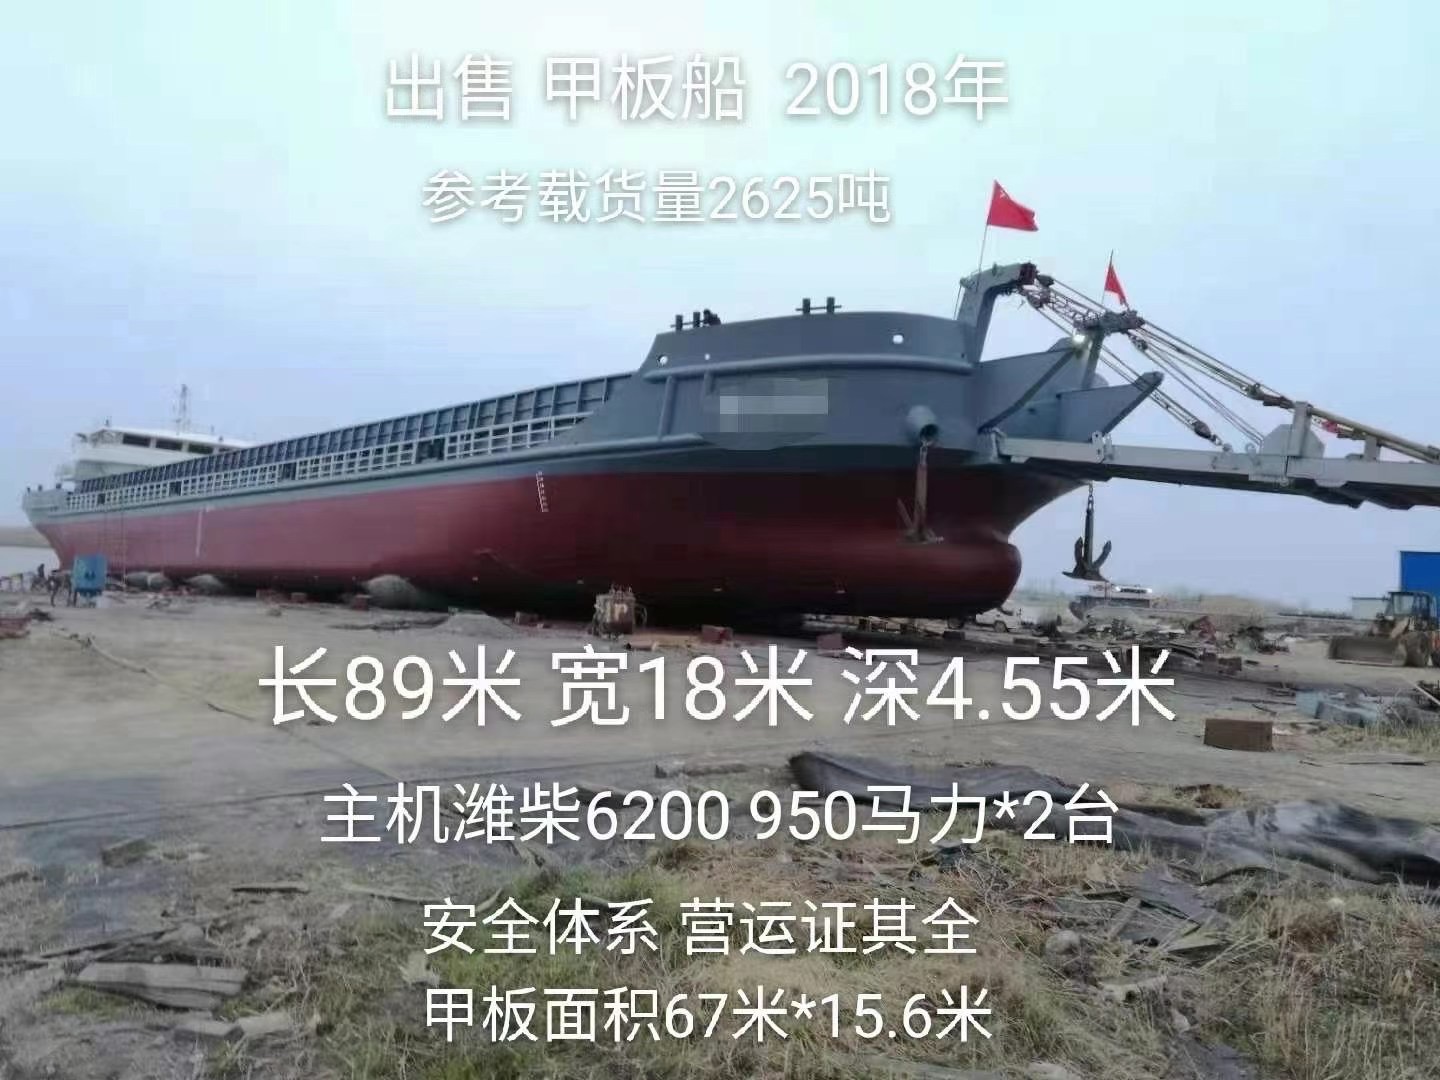 出售2625吨甲板船